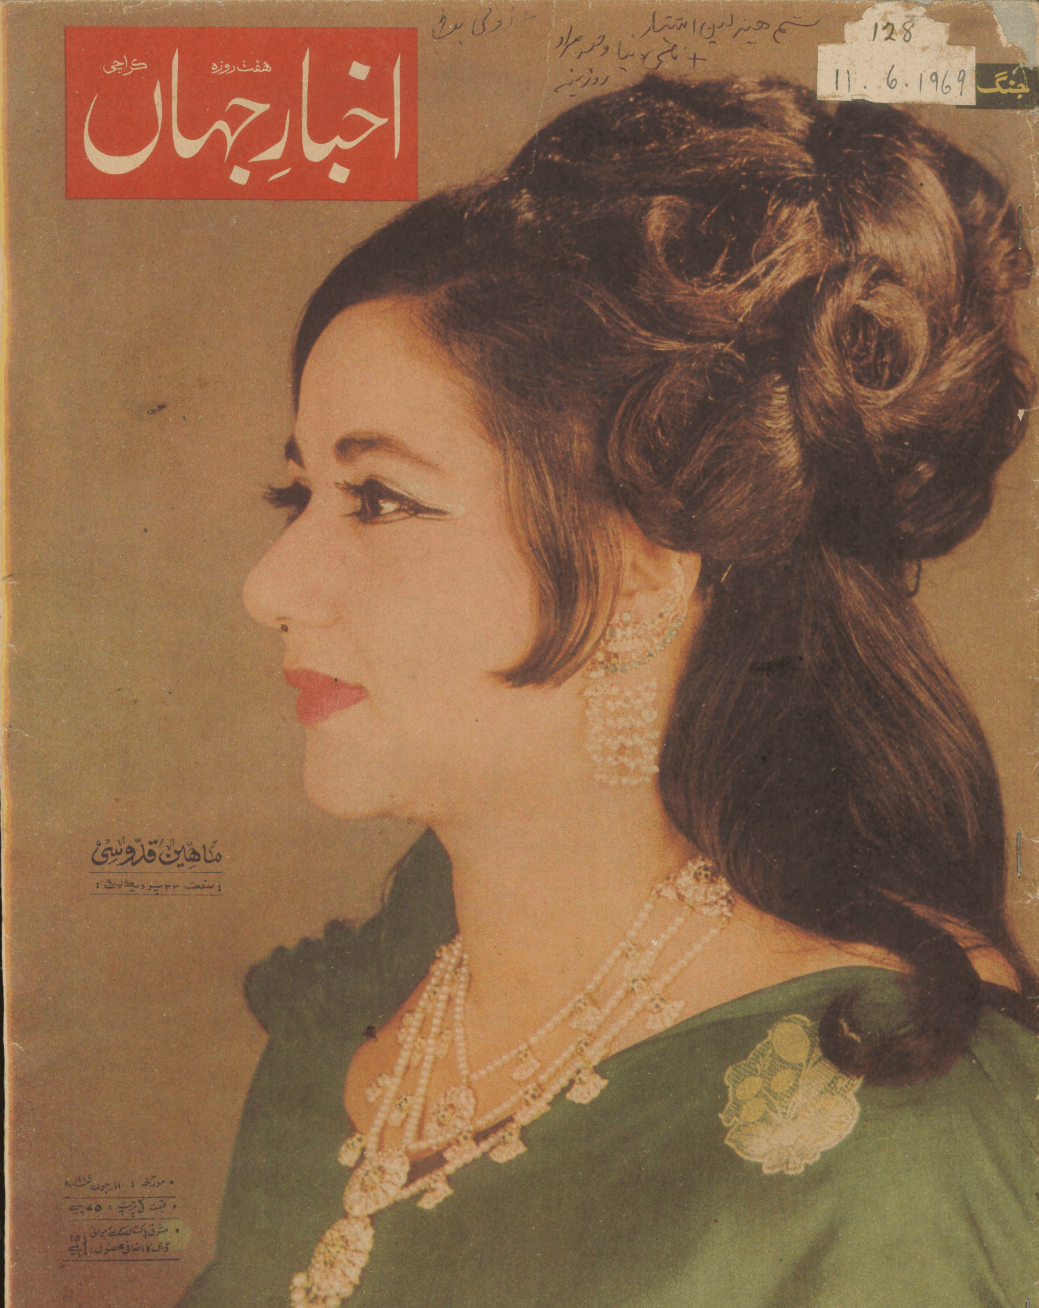 Akhbar-e-Jahan (June 11, 1969)